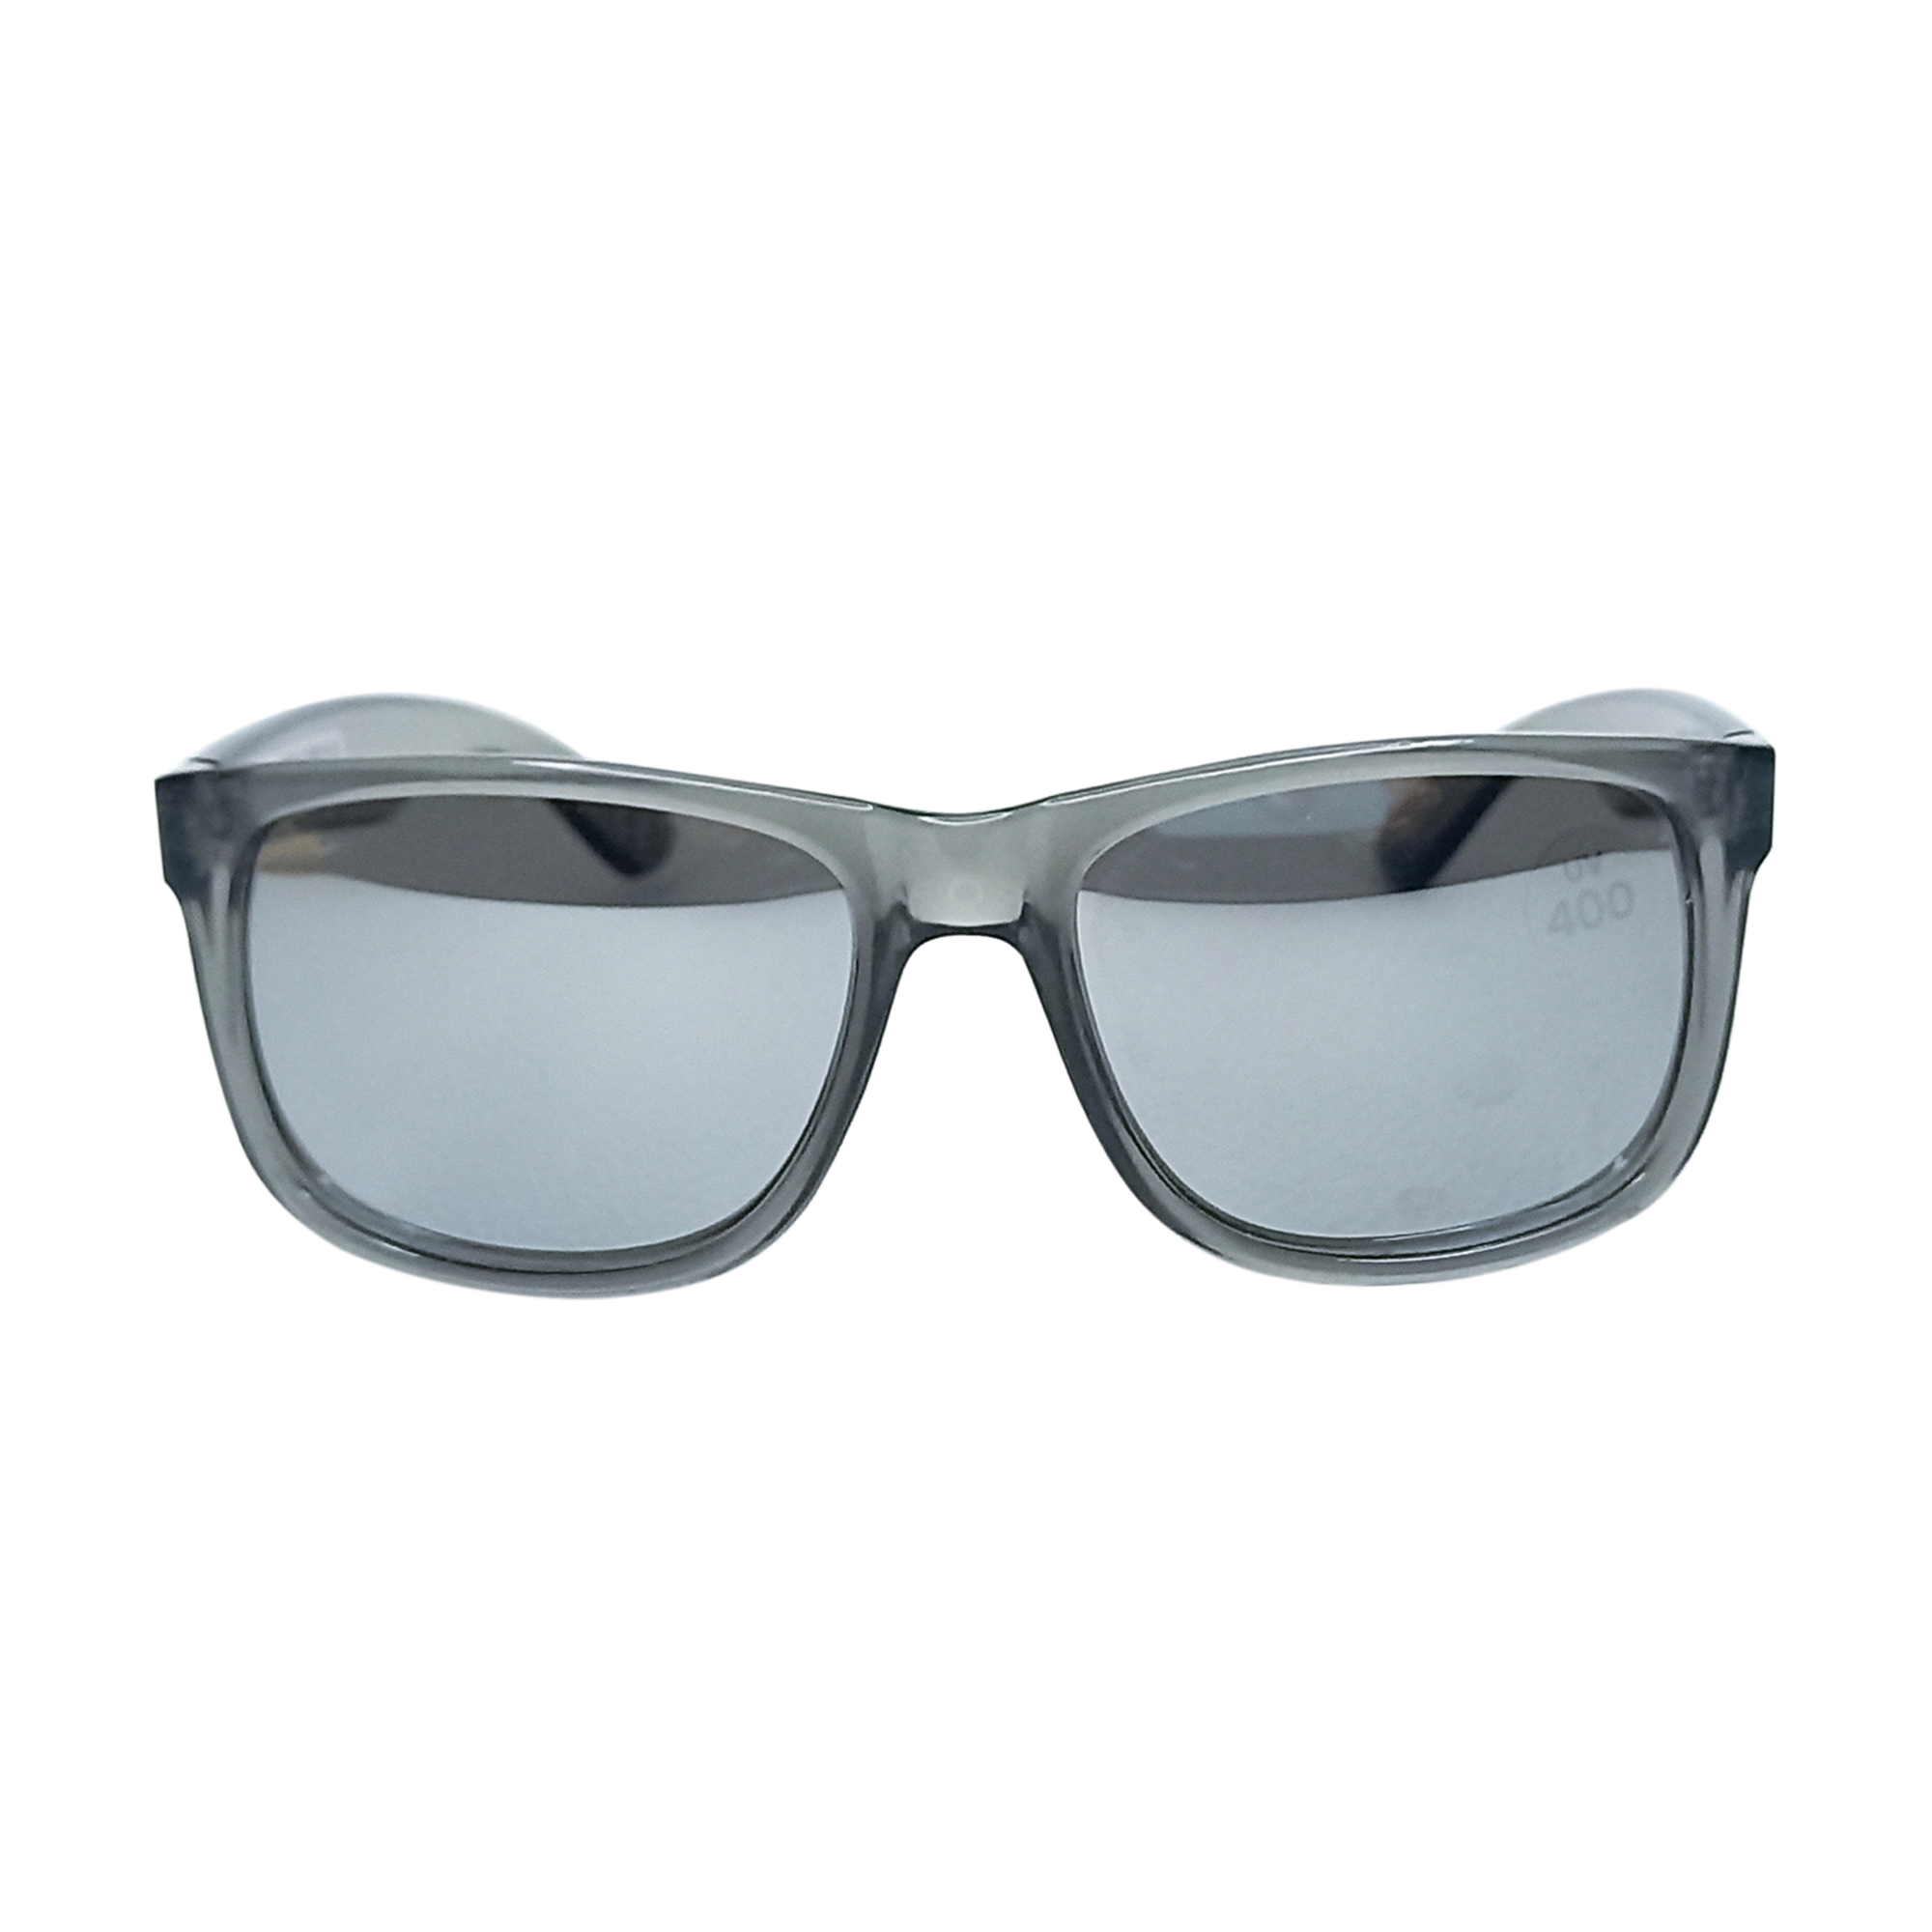 عینک آفتابی سیکس مدل UV400 GL 437-430